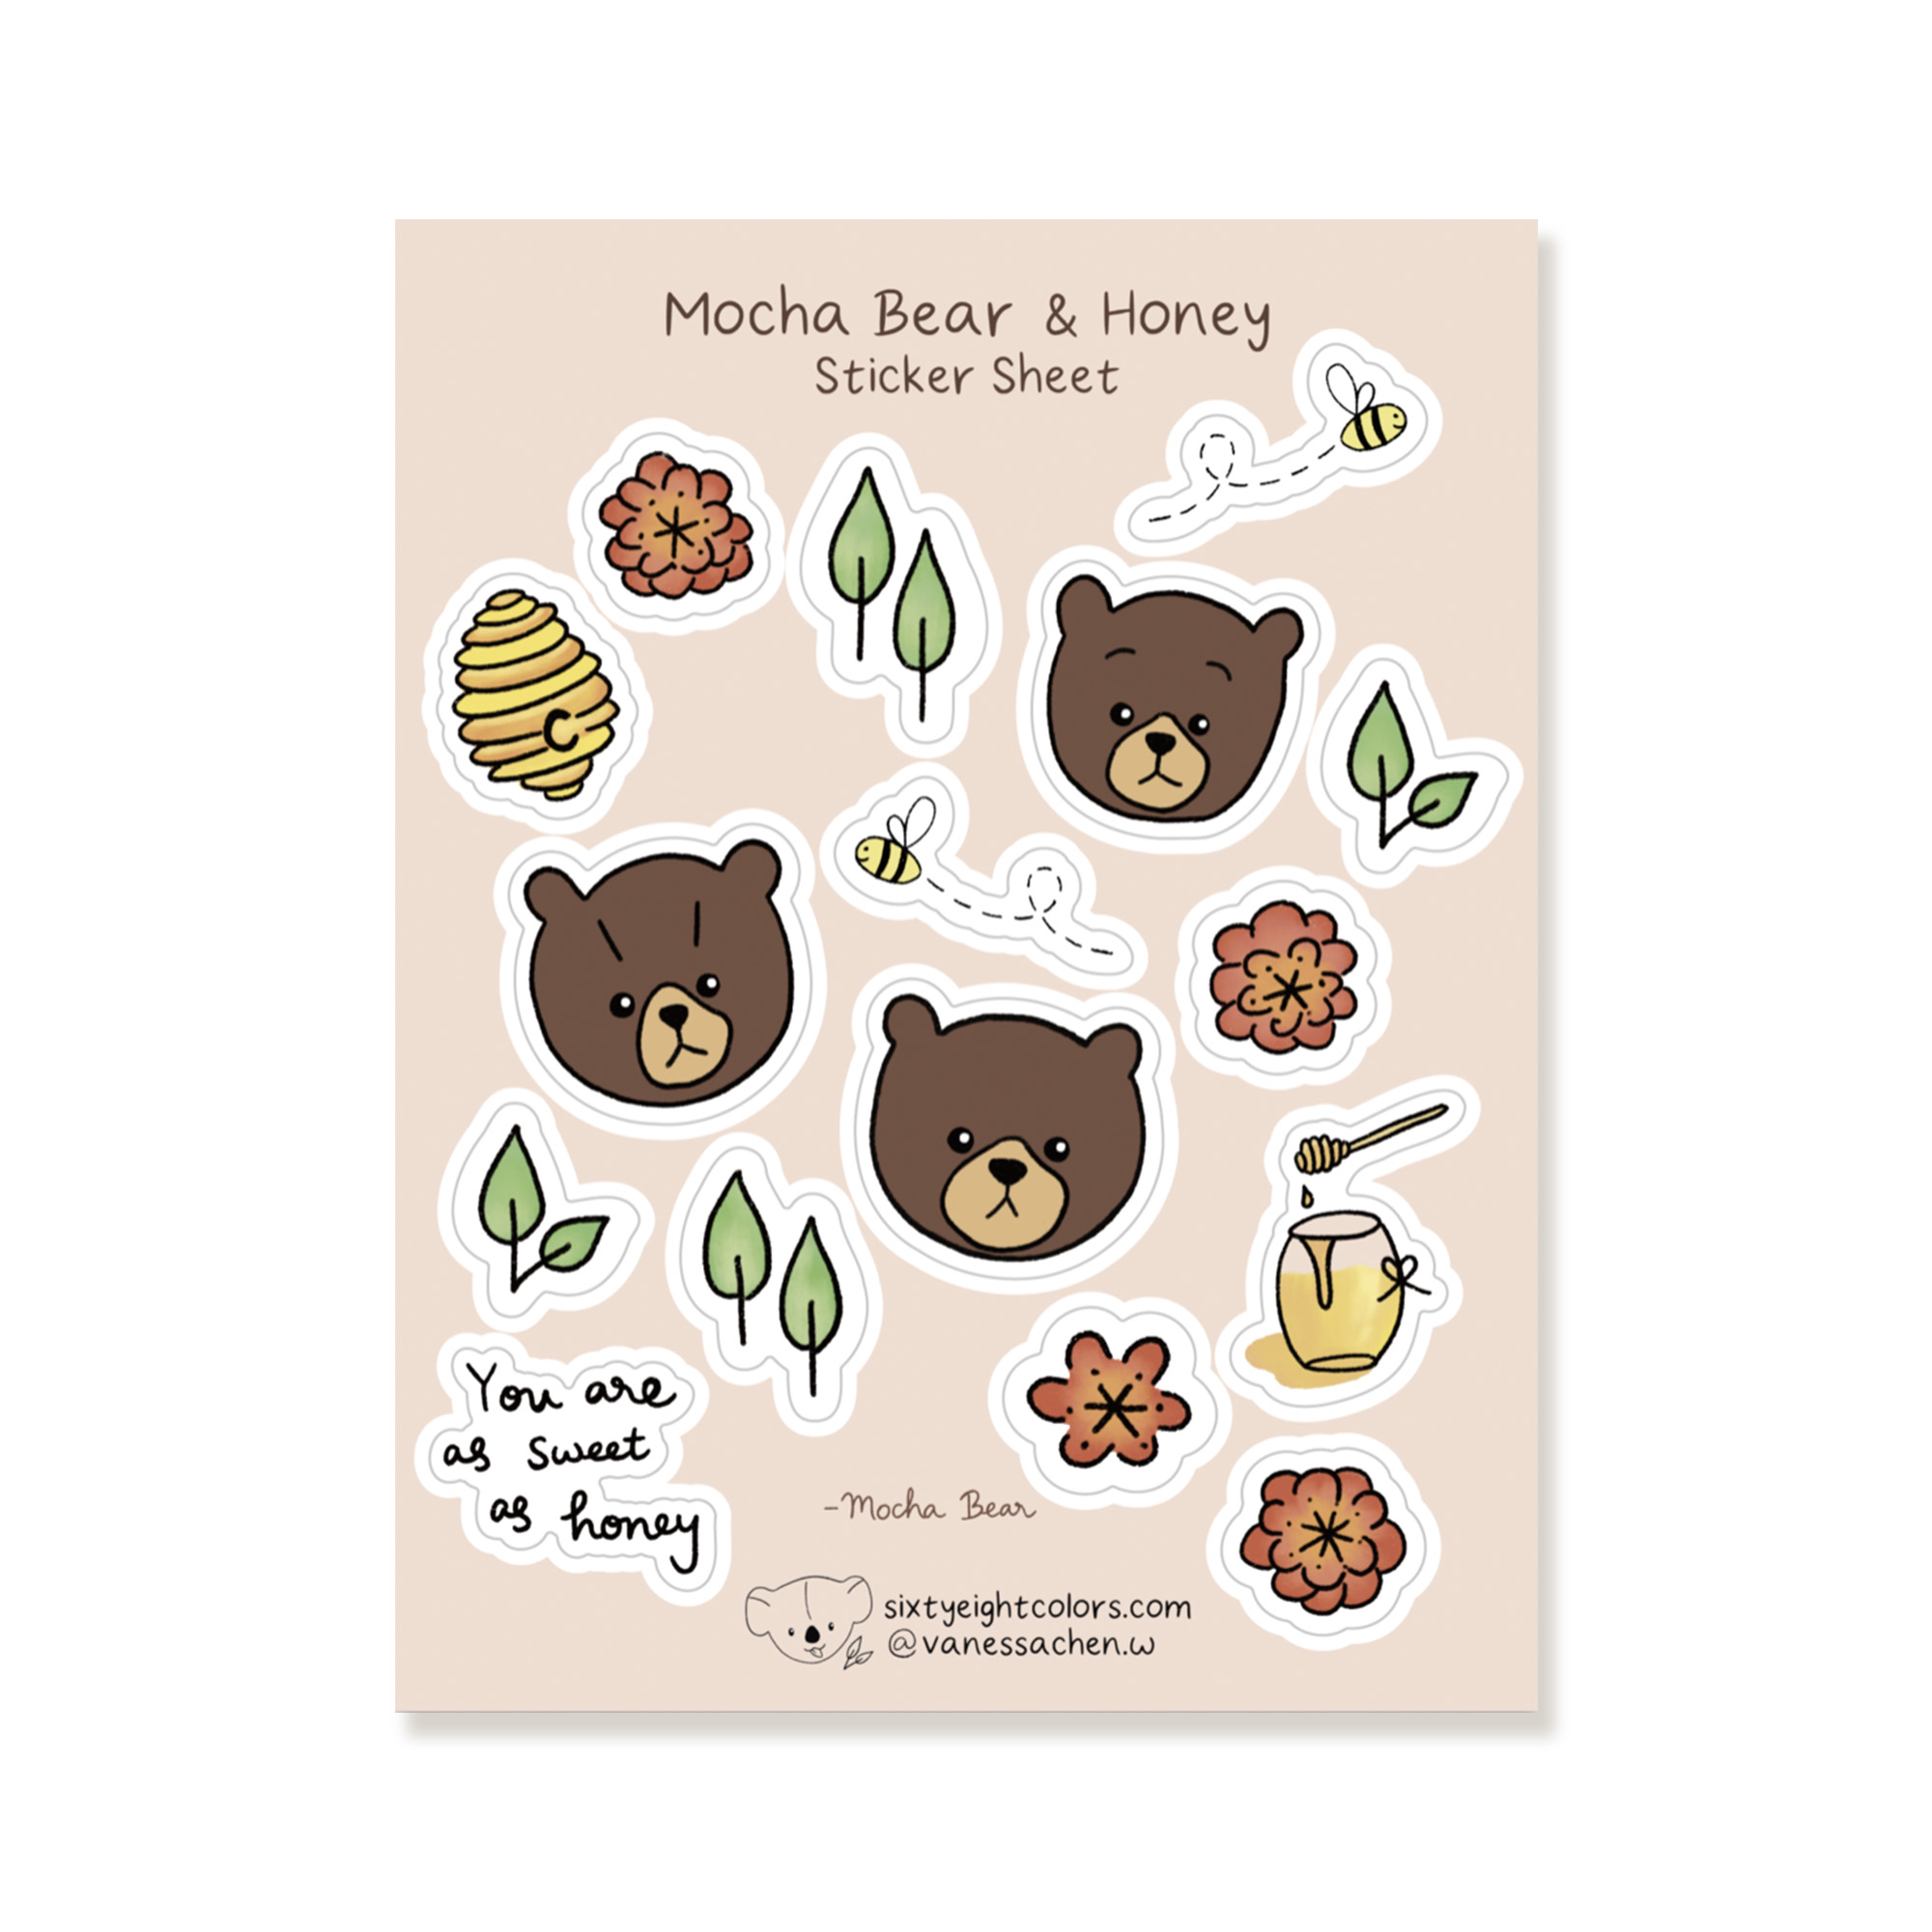 Mocha Bear Sticker Sheet 
															/ Sixtyeightcolors							